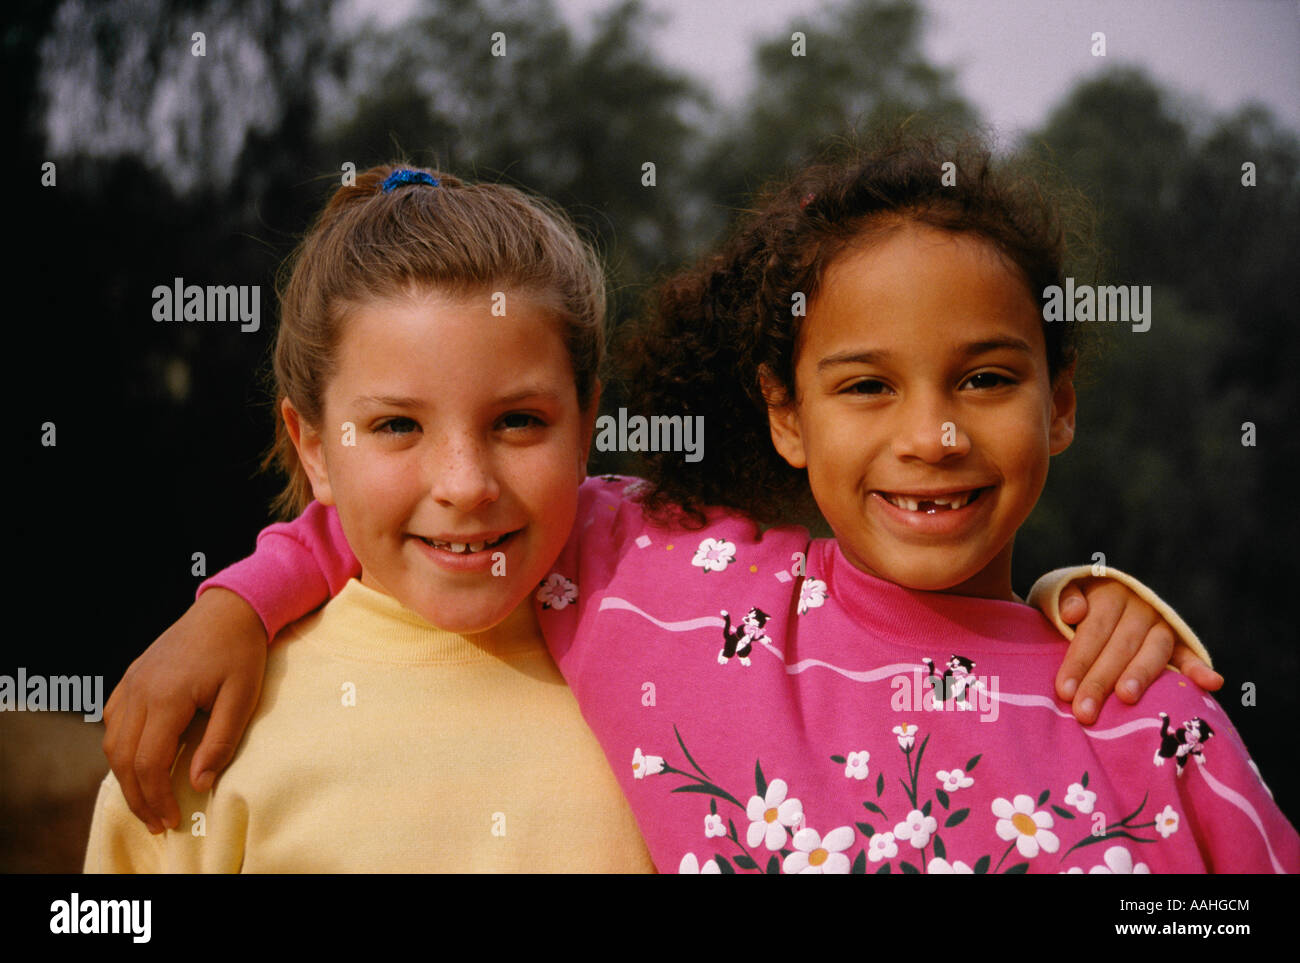 Mädchen 6 7 Jahre alten jährigen lächelnd portrait Mädchen Kind Kinder POV fehlende Milchzähne Zahn rassisch unterschiedlichen rassischen Vielfalt Myrleen Pearson Stockfoto